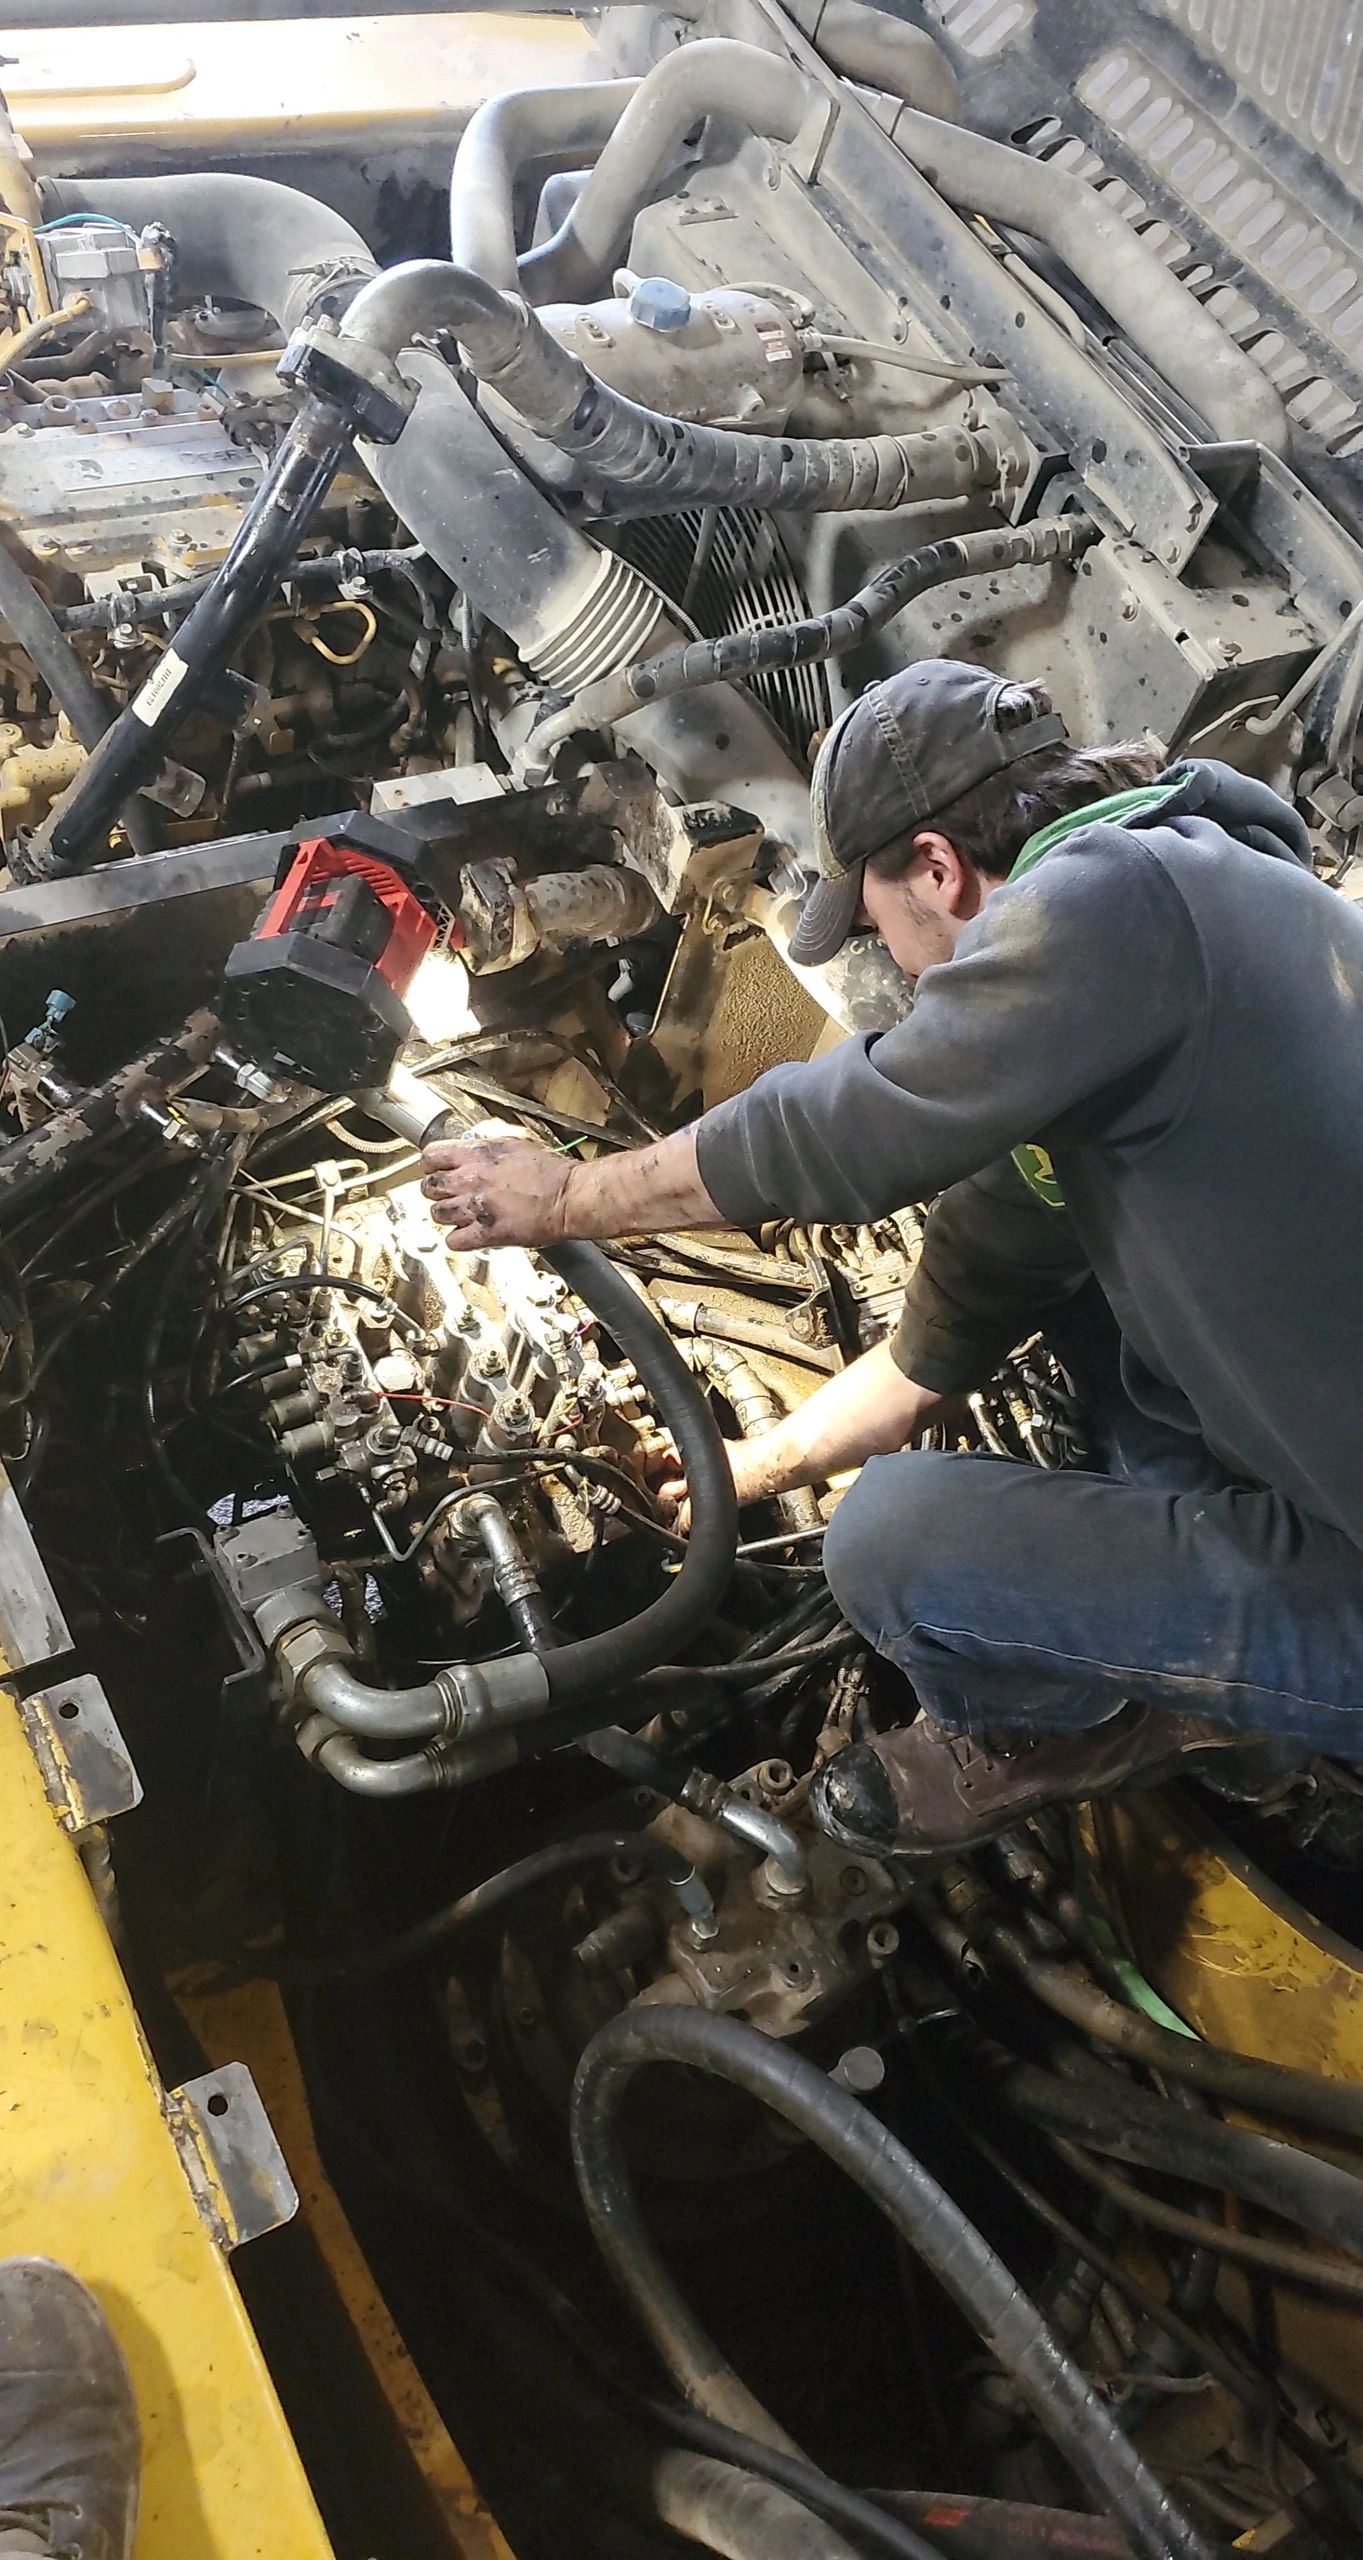 James working on a John Deere 350 - hydraulic leaks.